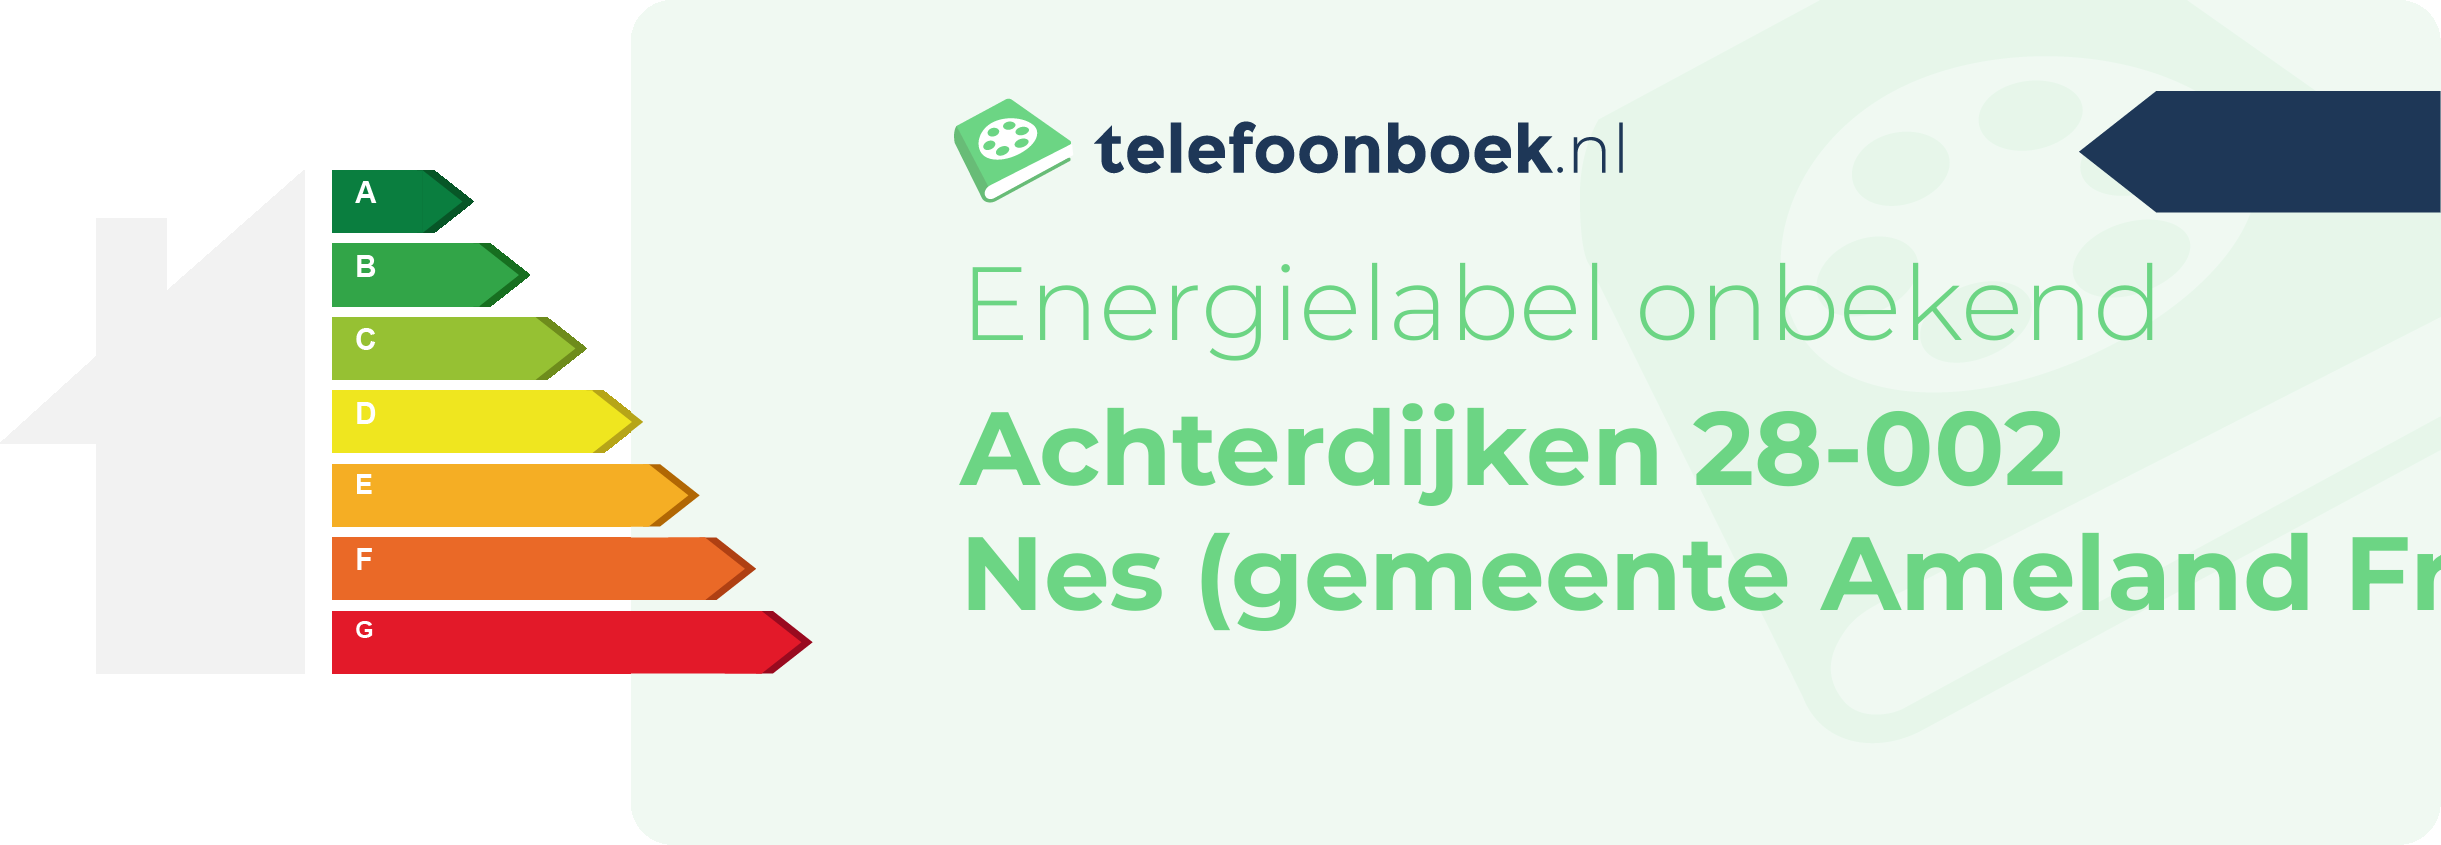 Energielabel Achterdijken 28-002 Nes (gemeente Ameland Friesland)